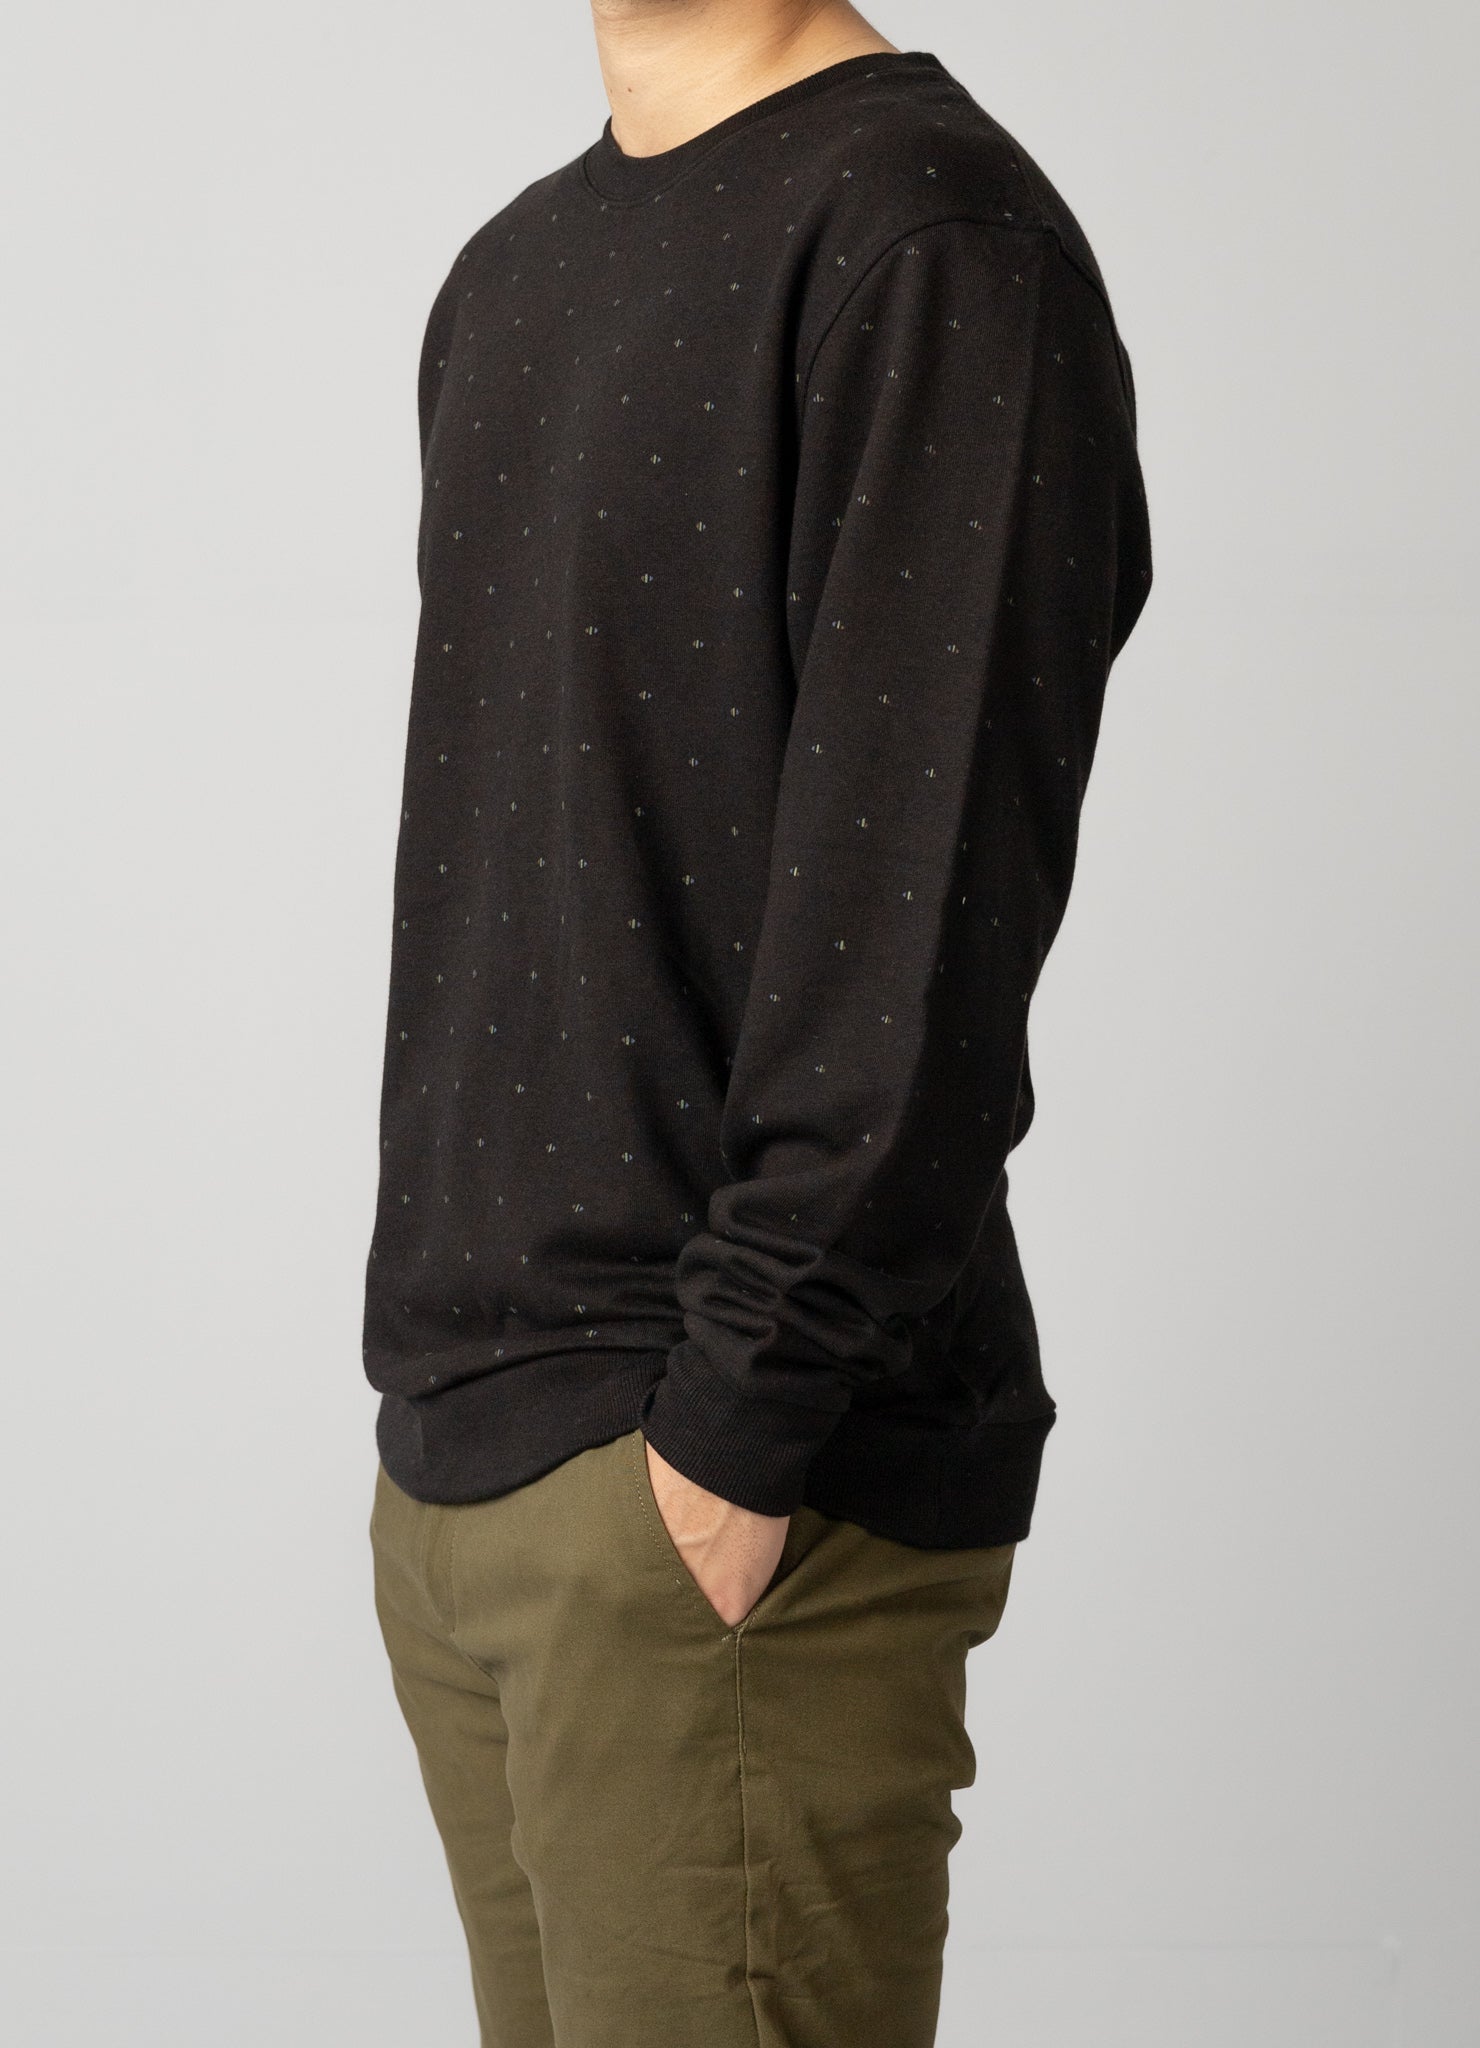 Cozy long-sleeved screen-printed sweatshirt